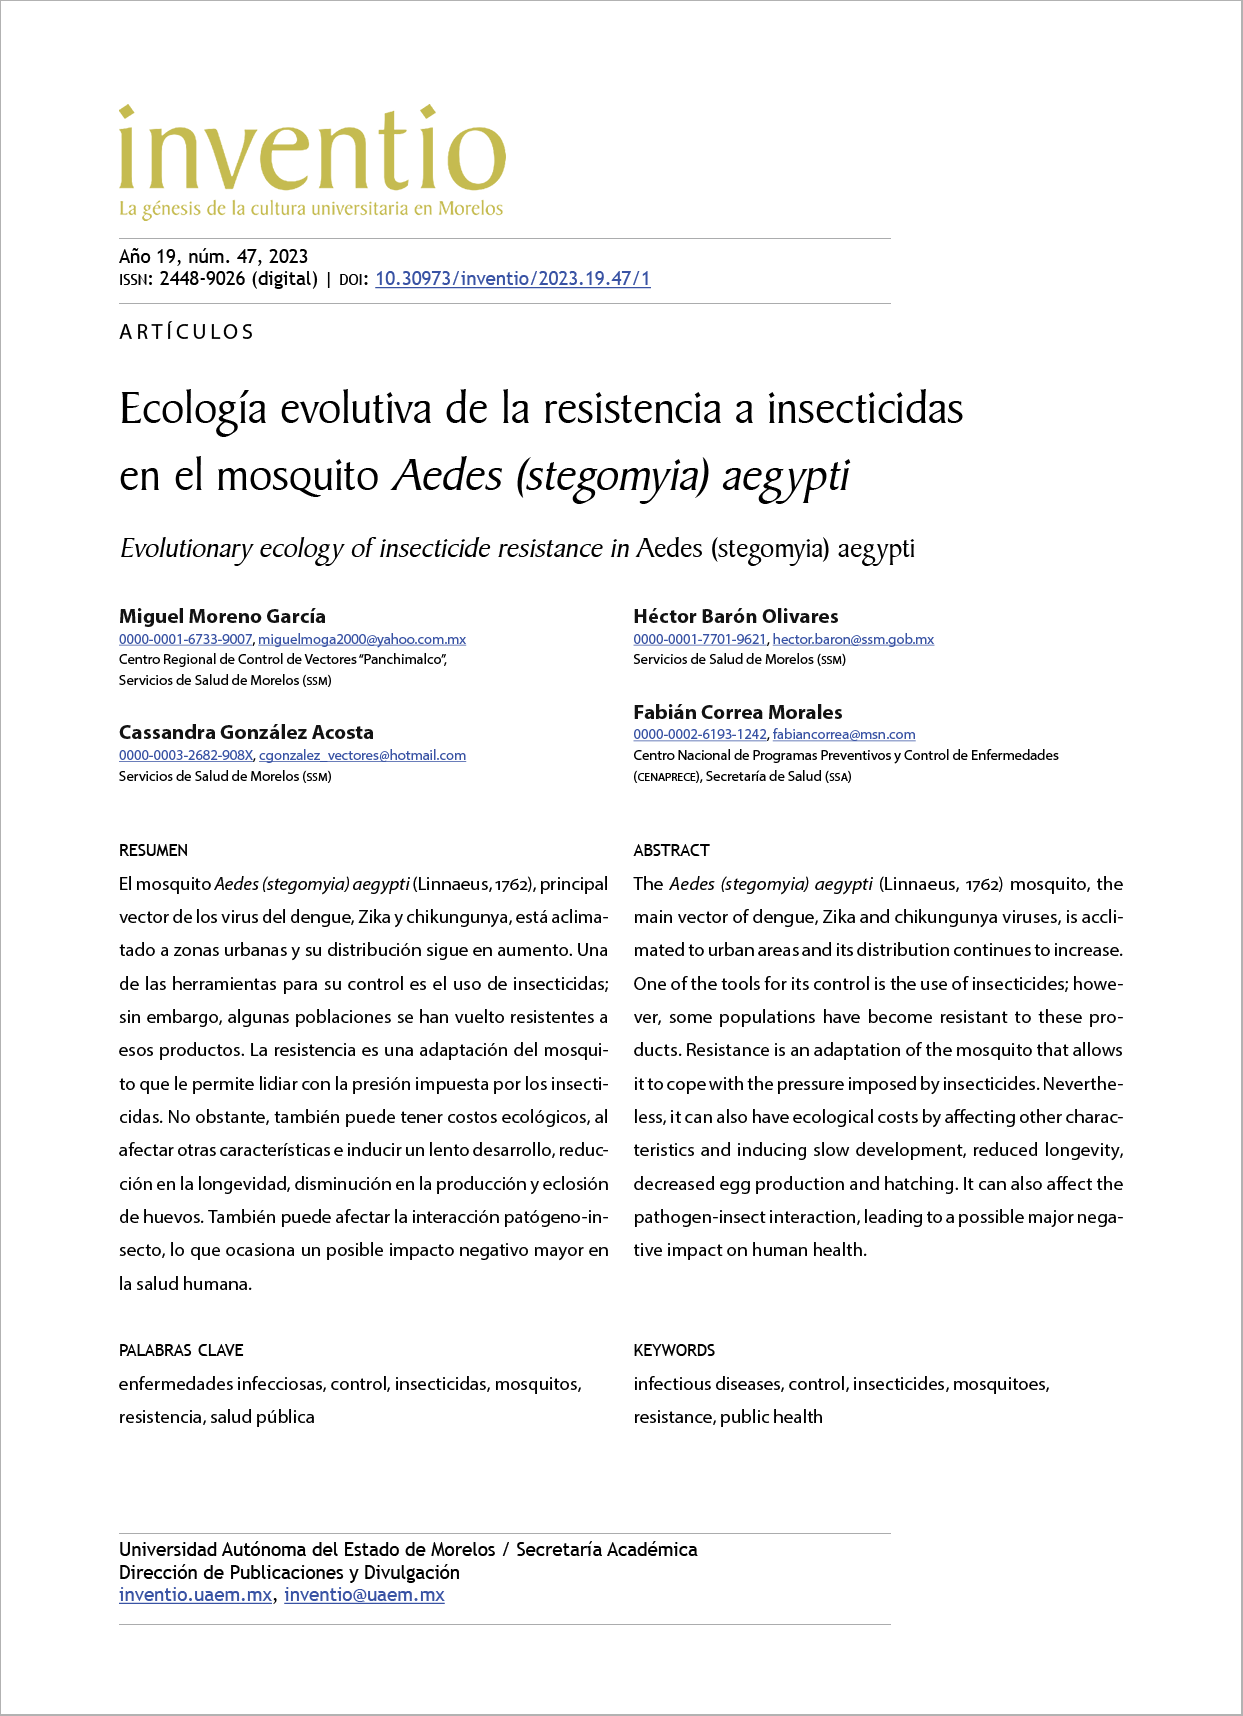 Ecología evolutiva de la resistencia a insecticidas en el mosquito Aedes (stegomyia) aegypti